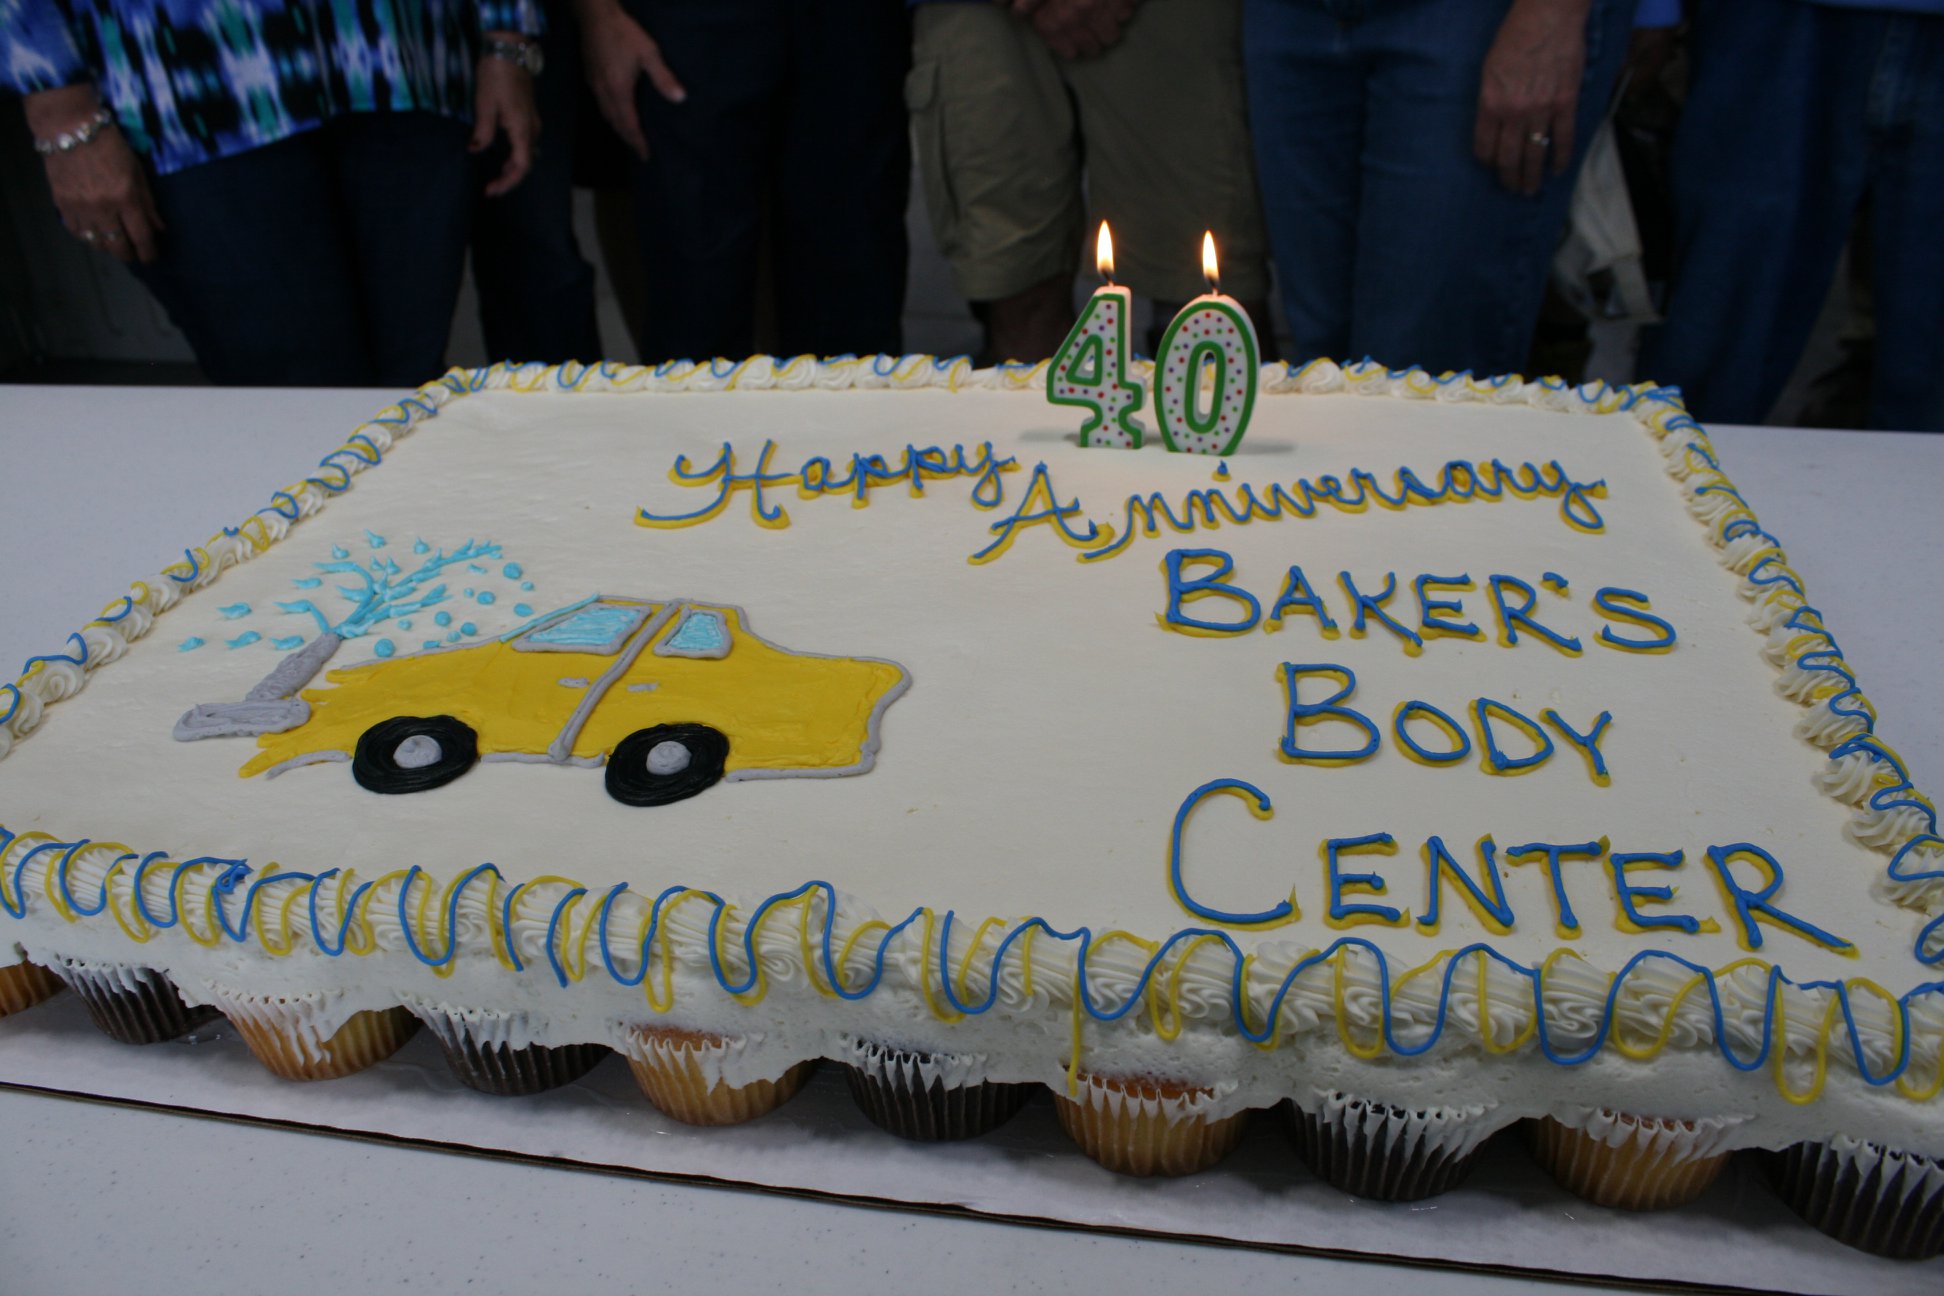 40th anniversary cake for Baker's Body Center